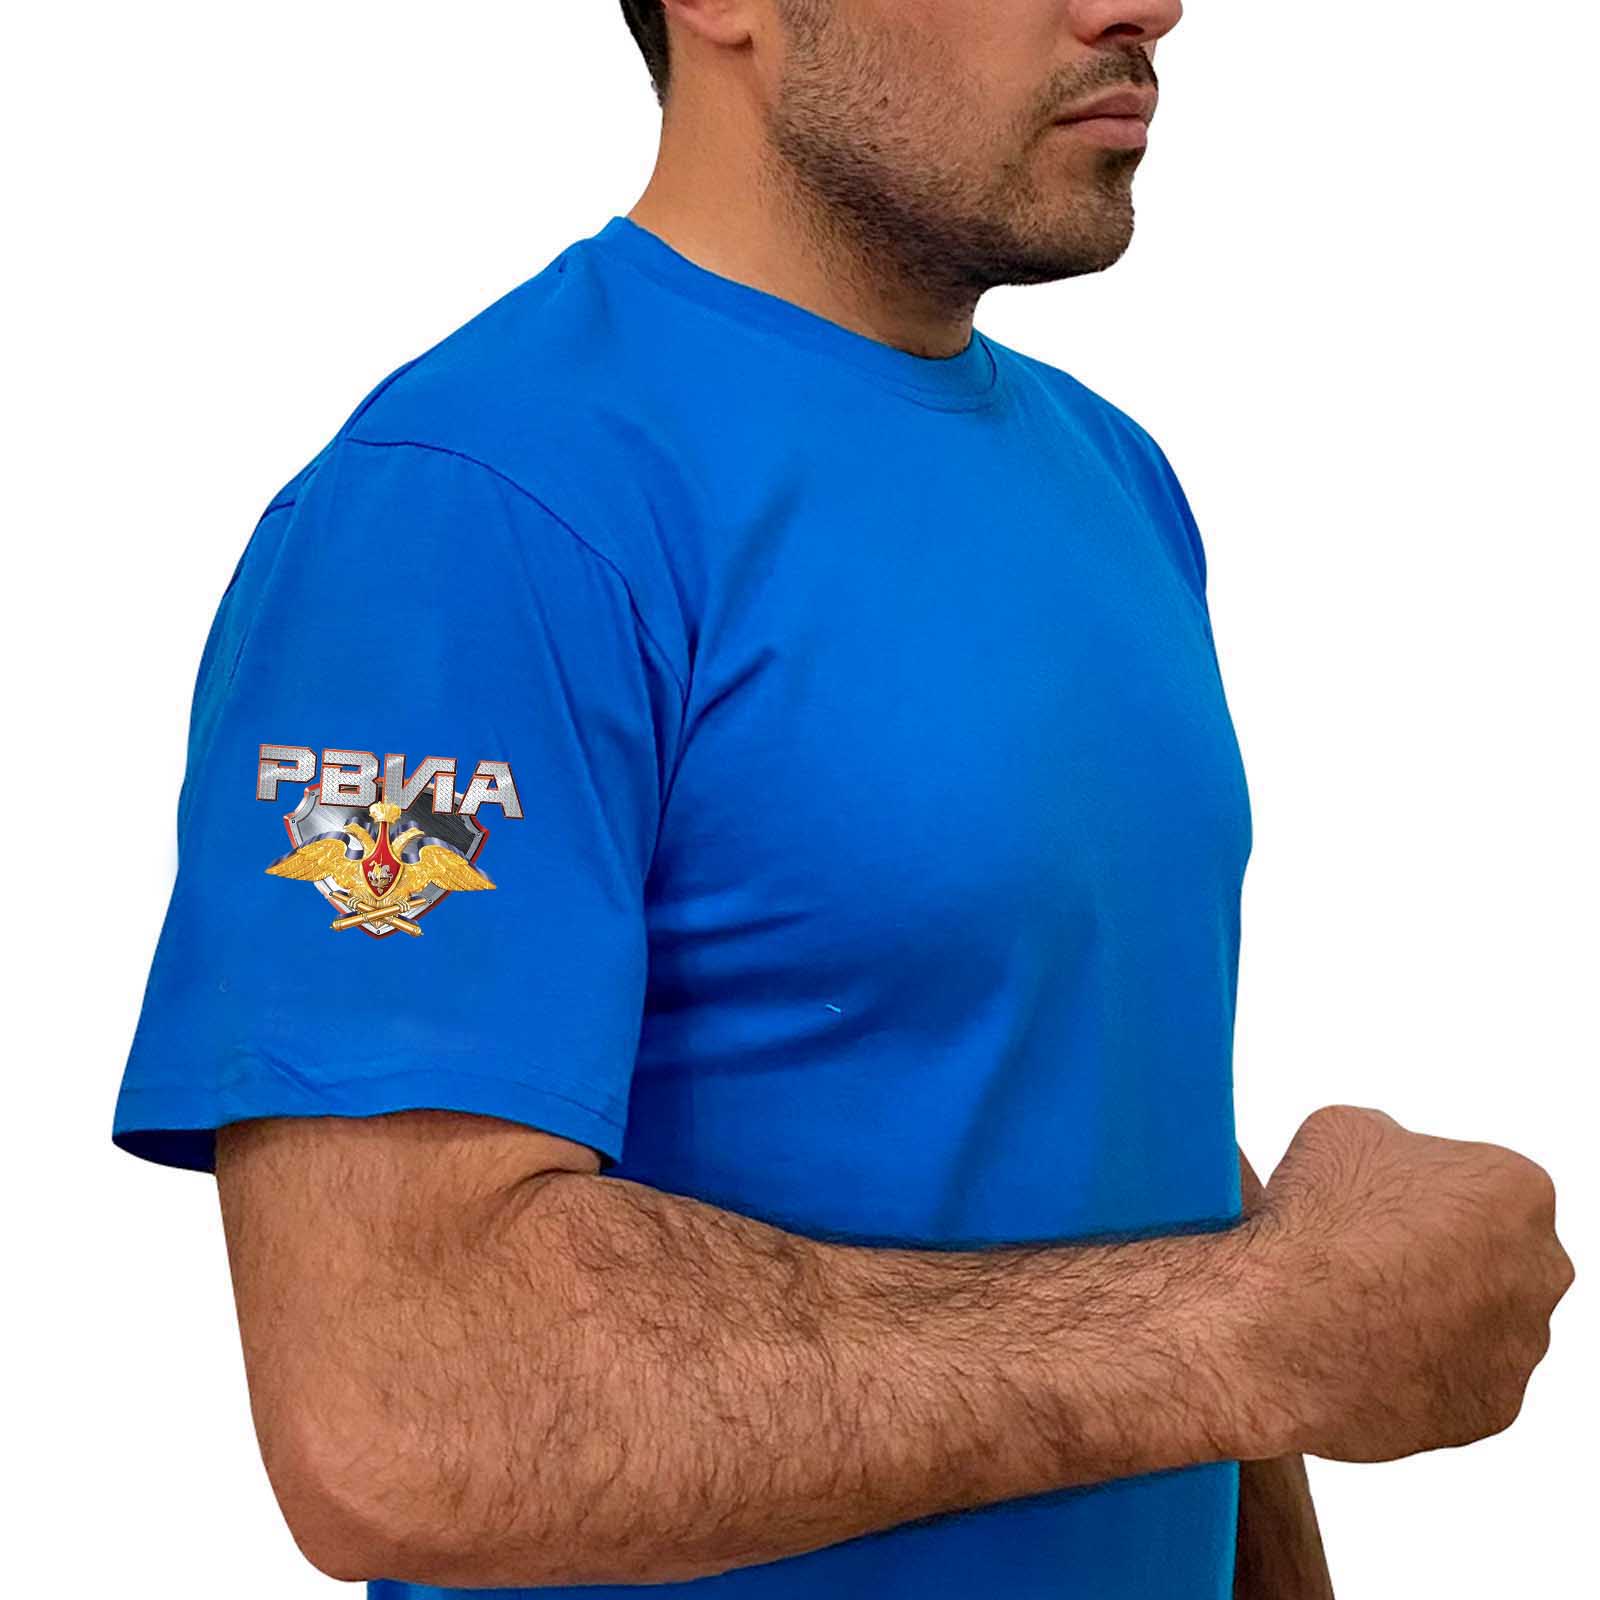 Купить васильковую удобную футболку с термотрансфером РВиА выгодно